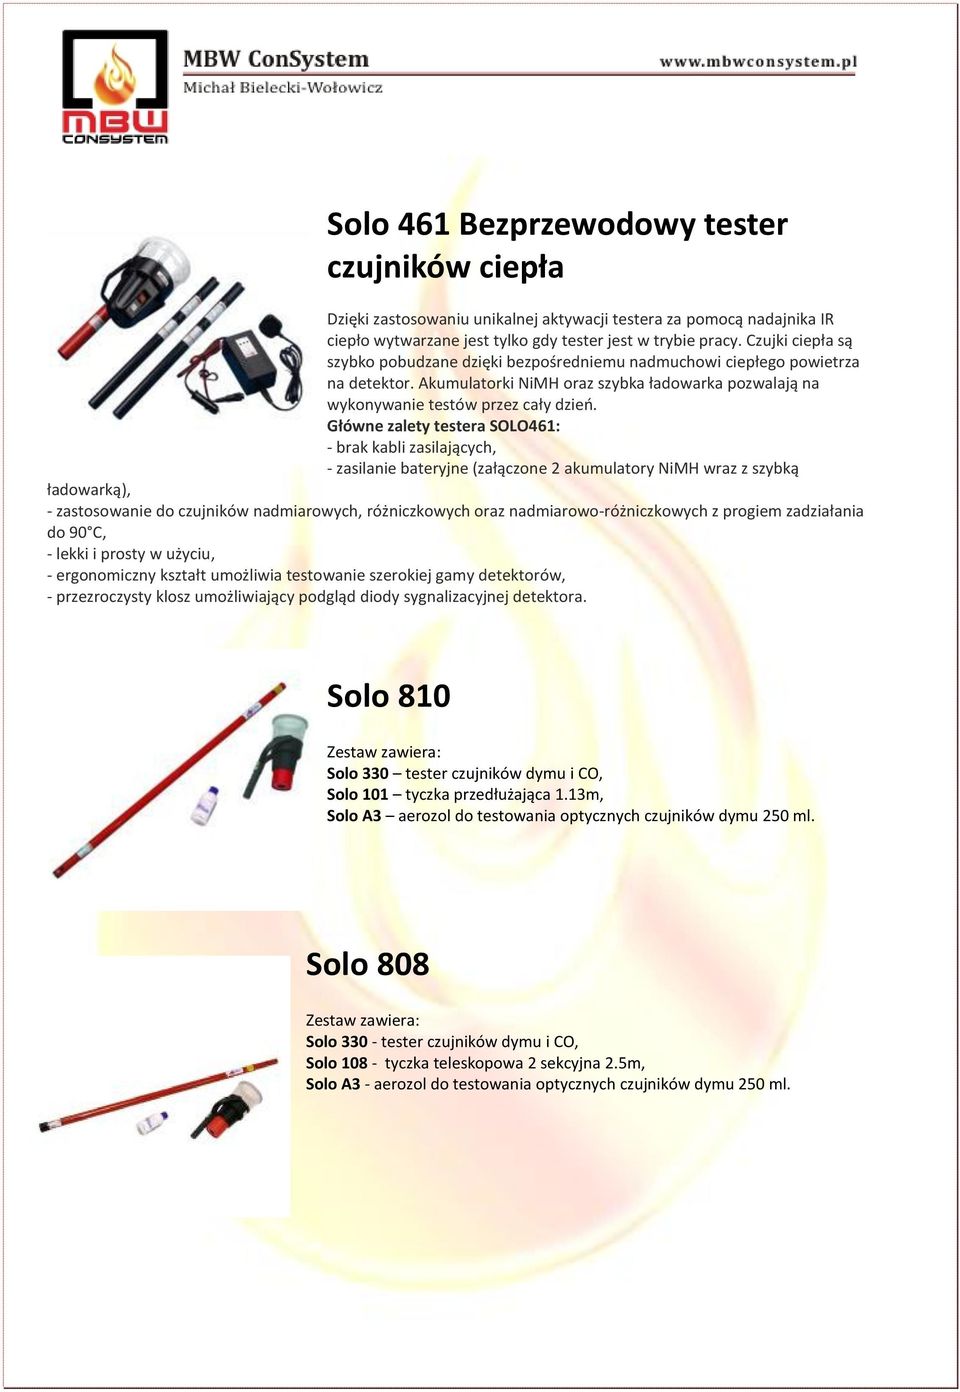 Główne zalety testera SOLO461: - brak kabli zasilających, - zasilanie bateryjne (załączone 2 akumulatory NiMH wraz z szybką ładowarką), - zastosowanie do czujników nadmiarowych, różniczkowych oraz